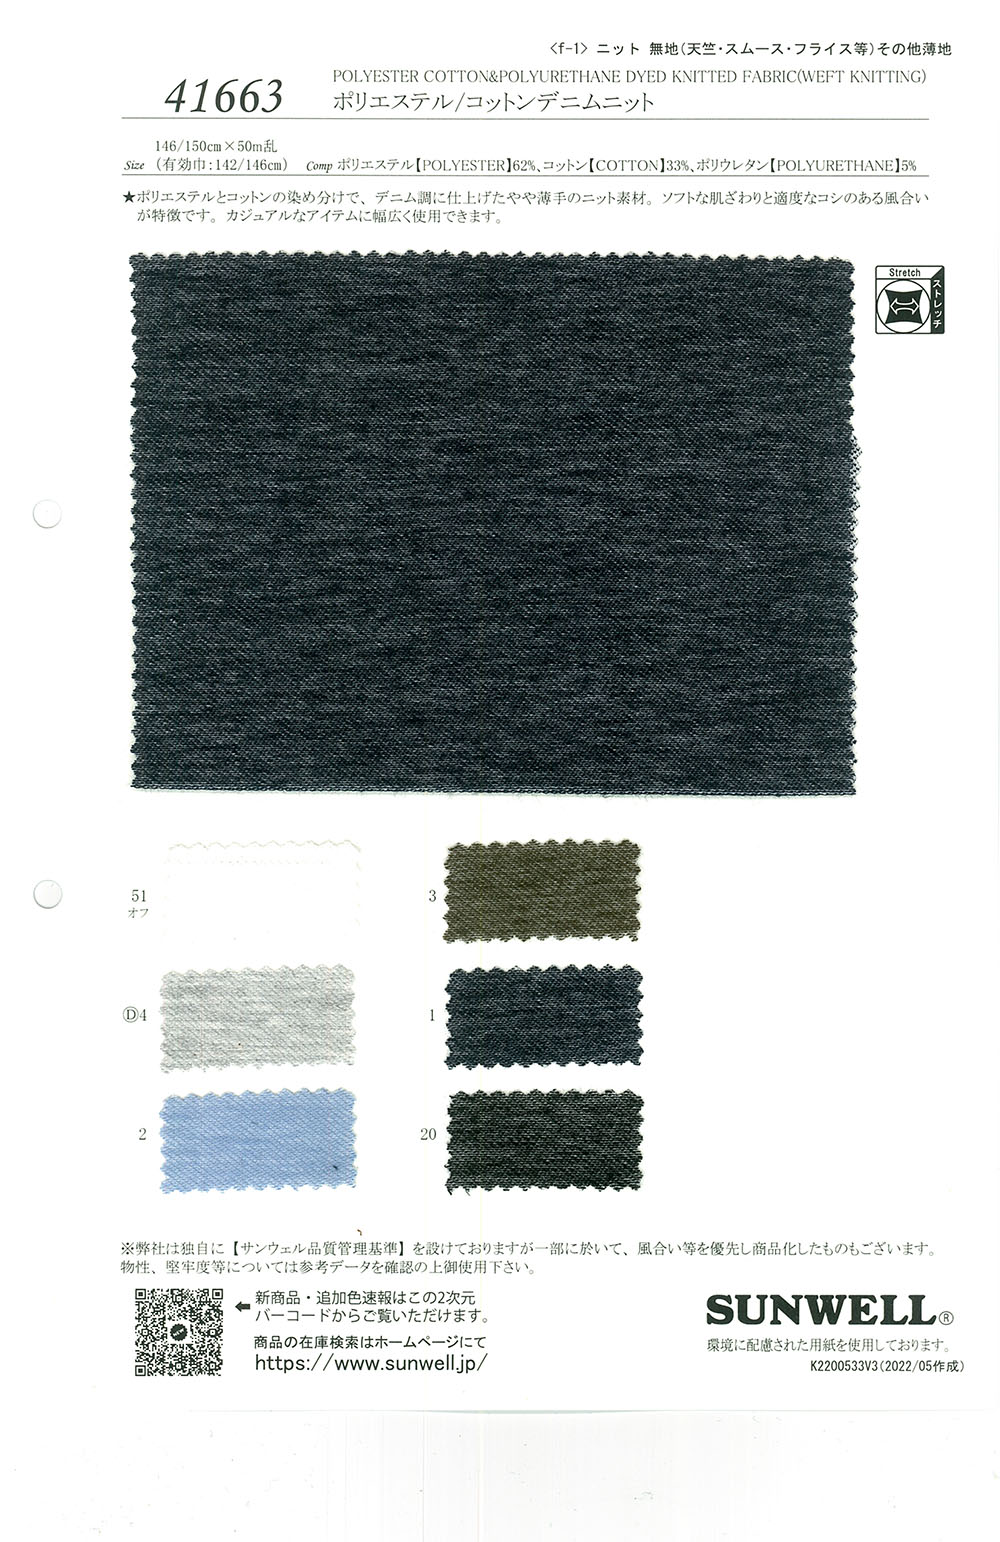 41663 Vải Dệt Kim Kim Polyester/bông Vải Bò SUNWELL ( Giếng Trời )